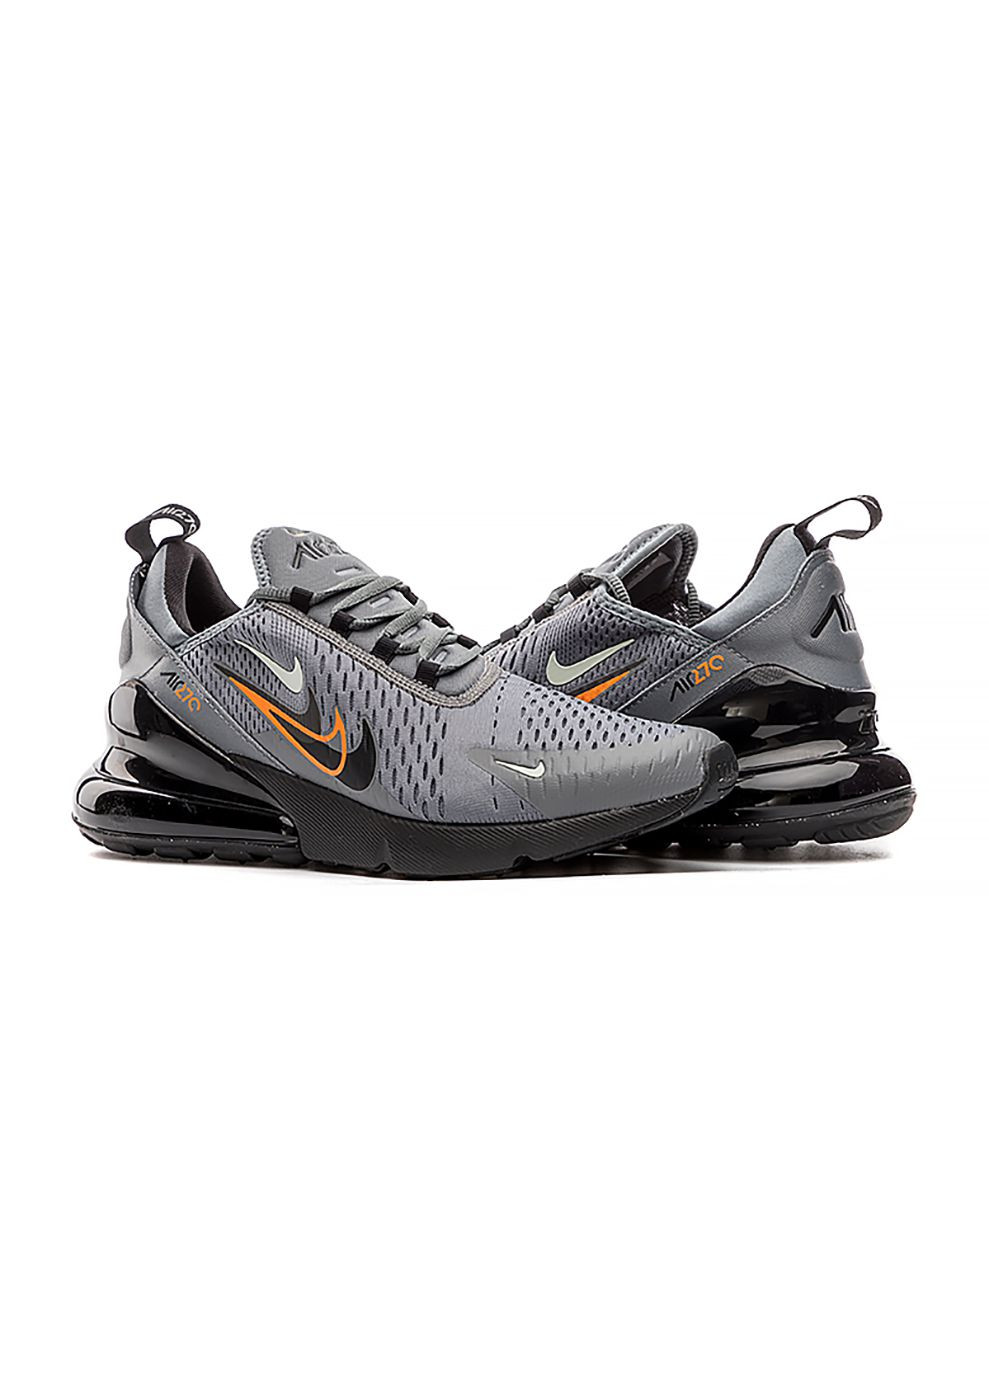 Цветные демисезонные мужские кроссовки air max 270 черный серый Nike